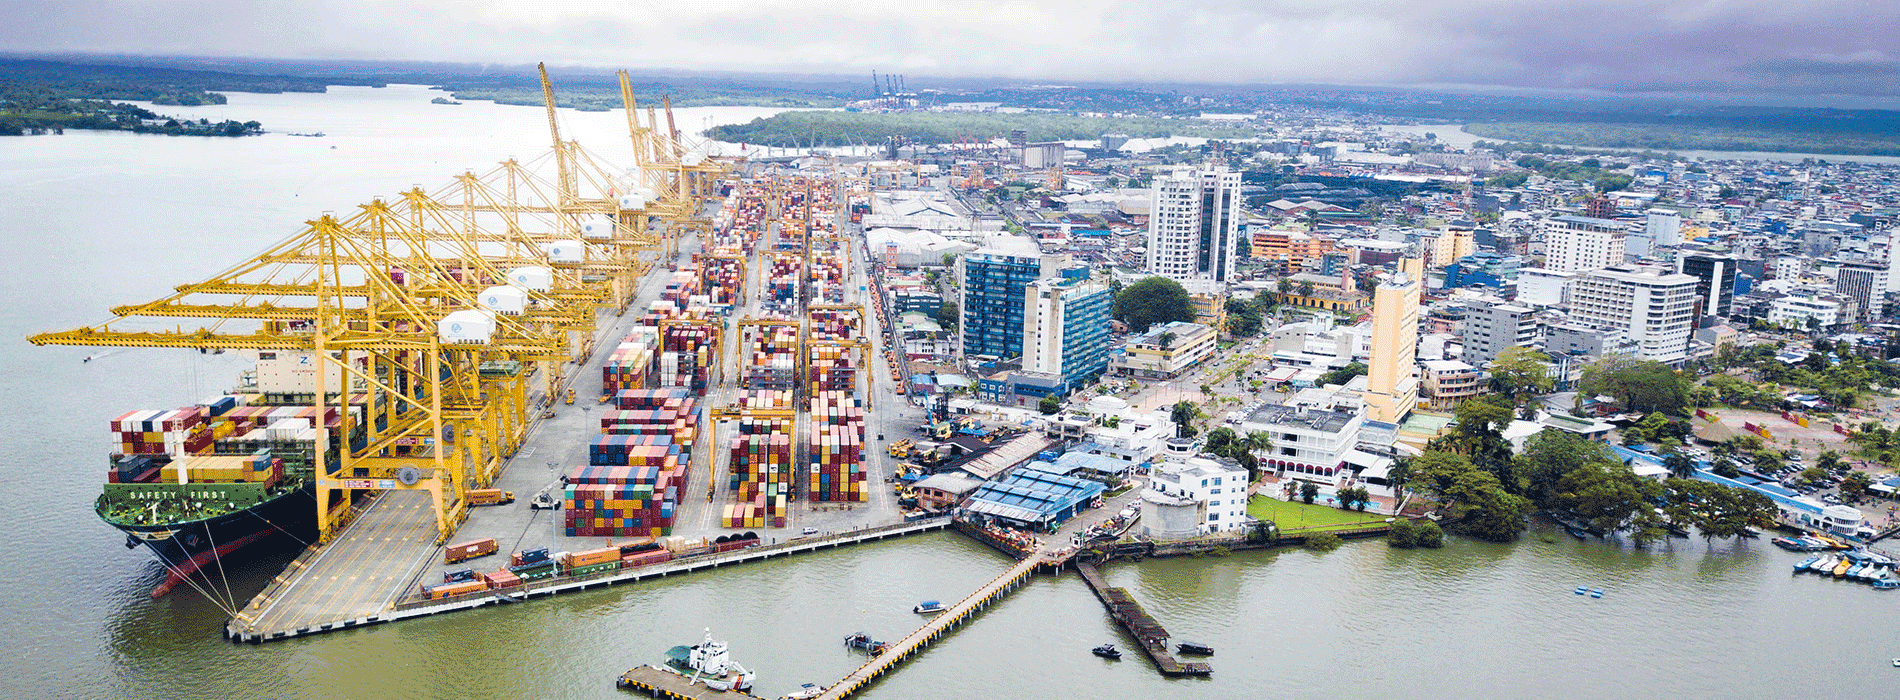 Fotografía panorámica de ciudad con puerto de exportación 